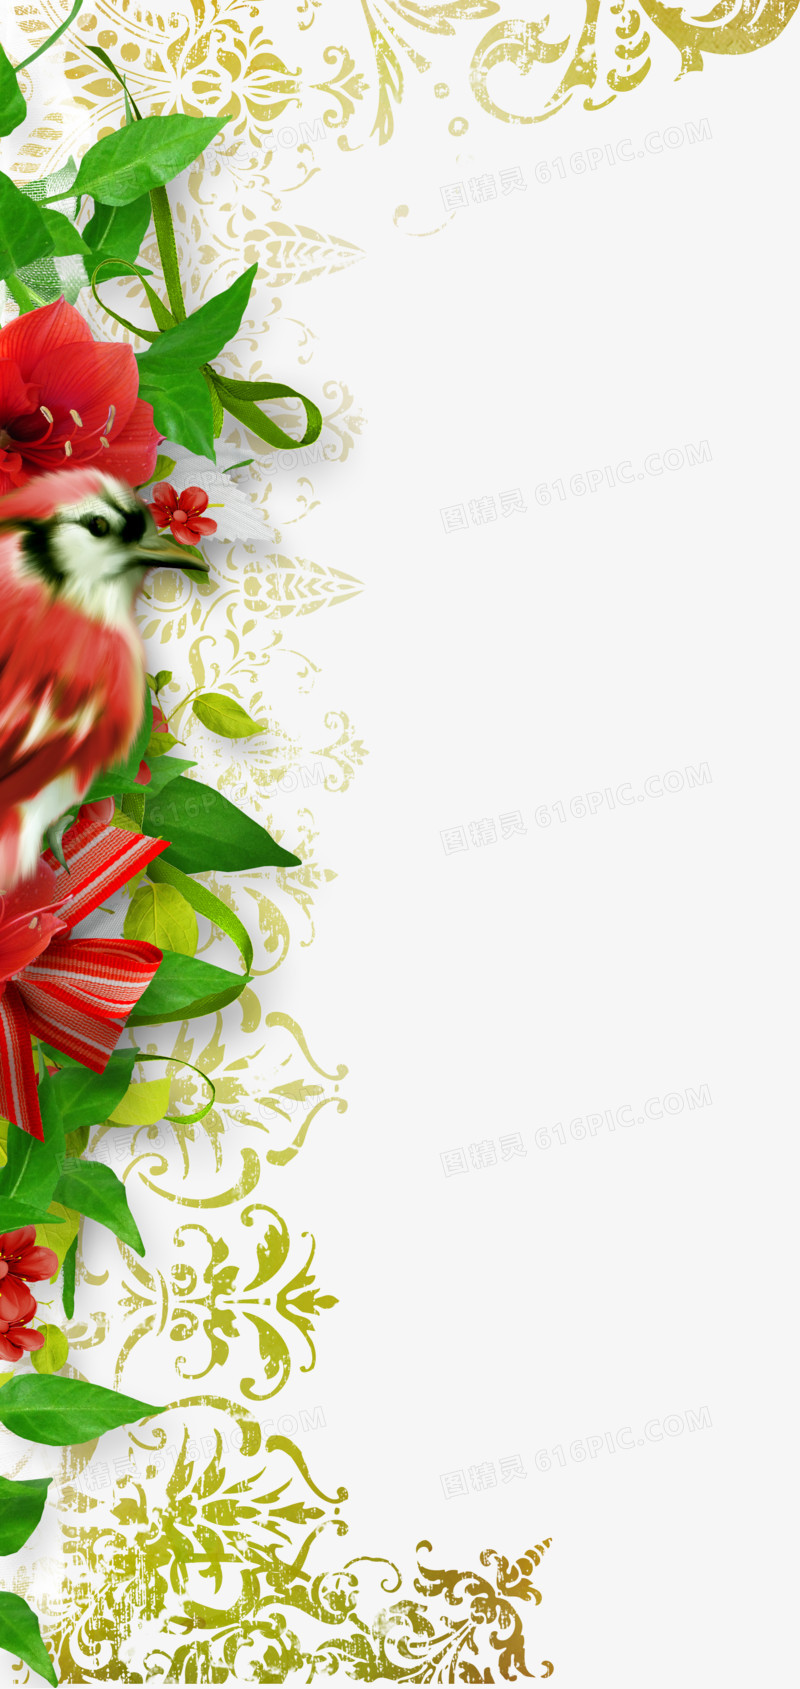 花卉画花卉图片素材 精美清新边框